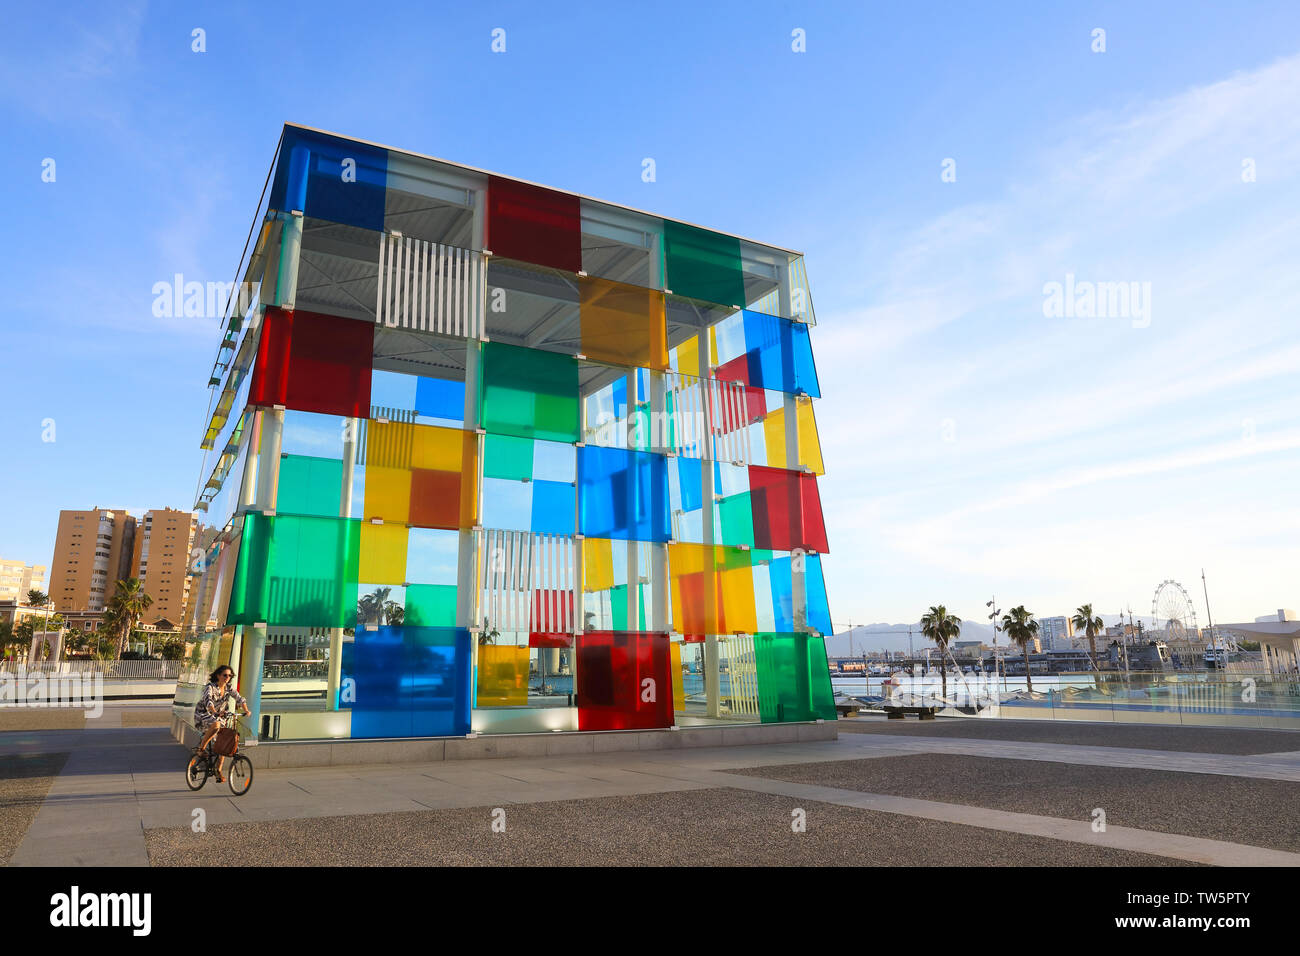 Le Centre Pompidou Malaga, une ramification du musée d'art contemporain, Paris en Muelle Uno, par le port, en Espagne, en Europe Banque D'Images